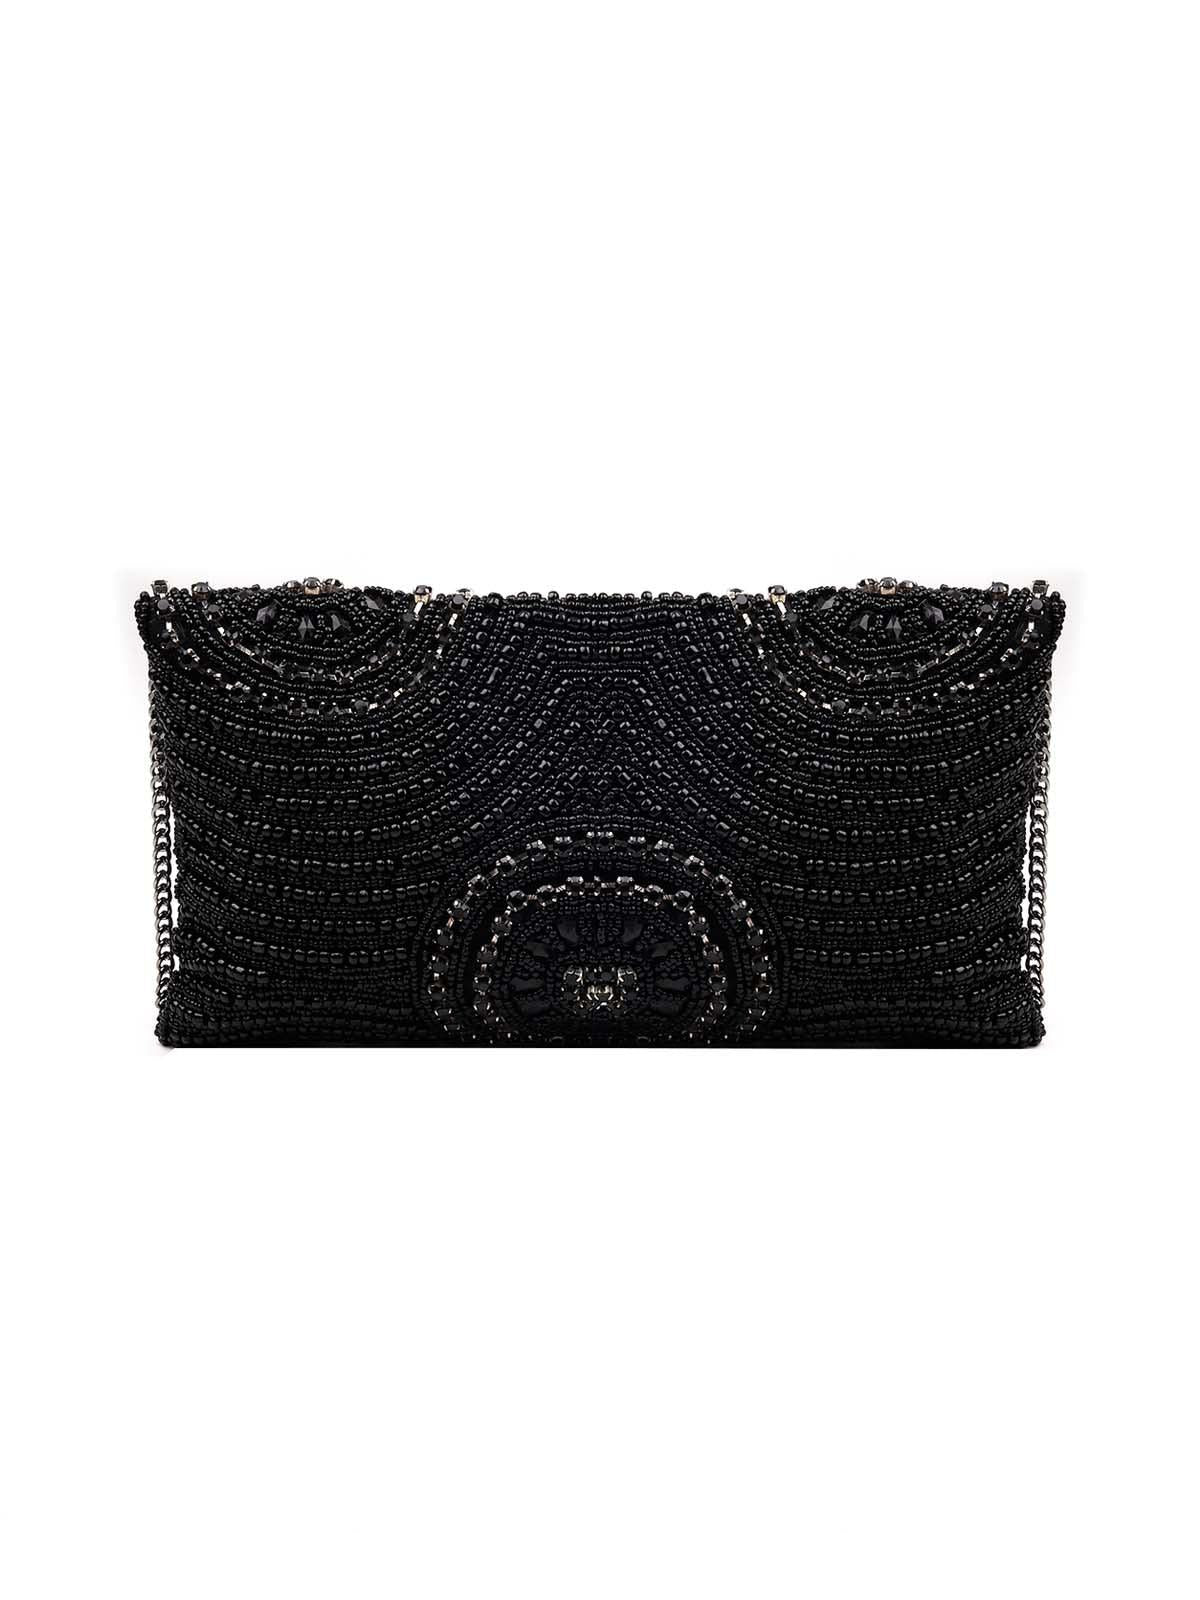 Jet Black gorgeous embellished sling bag-new298 - Odette